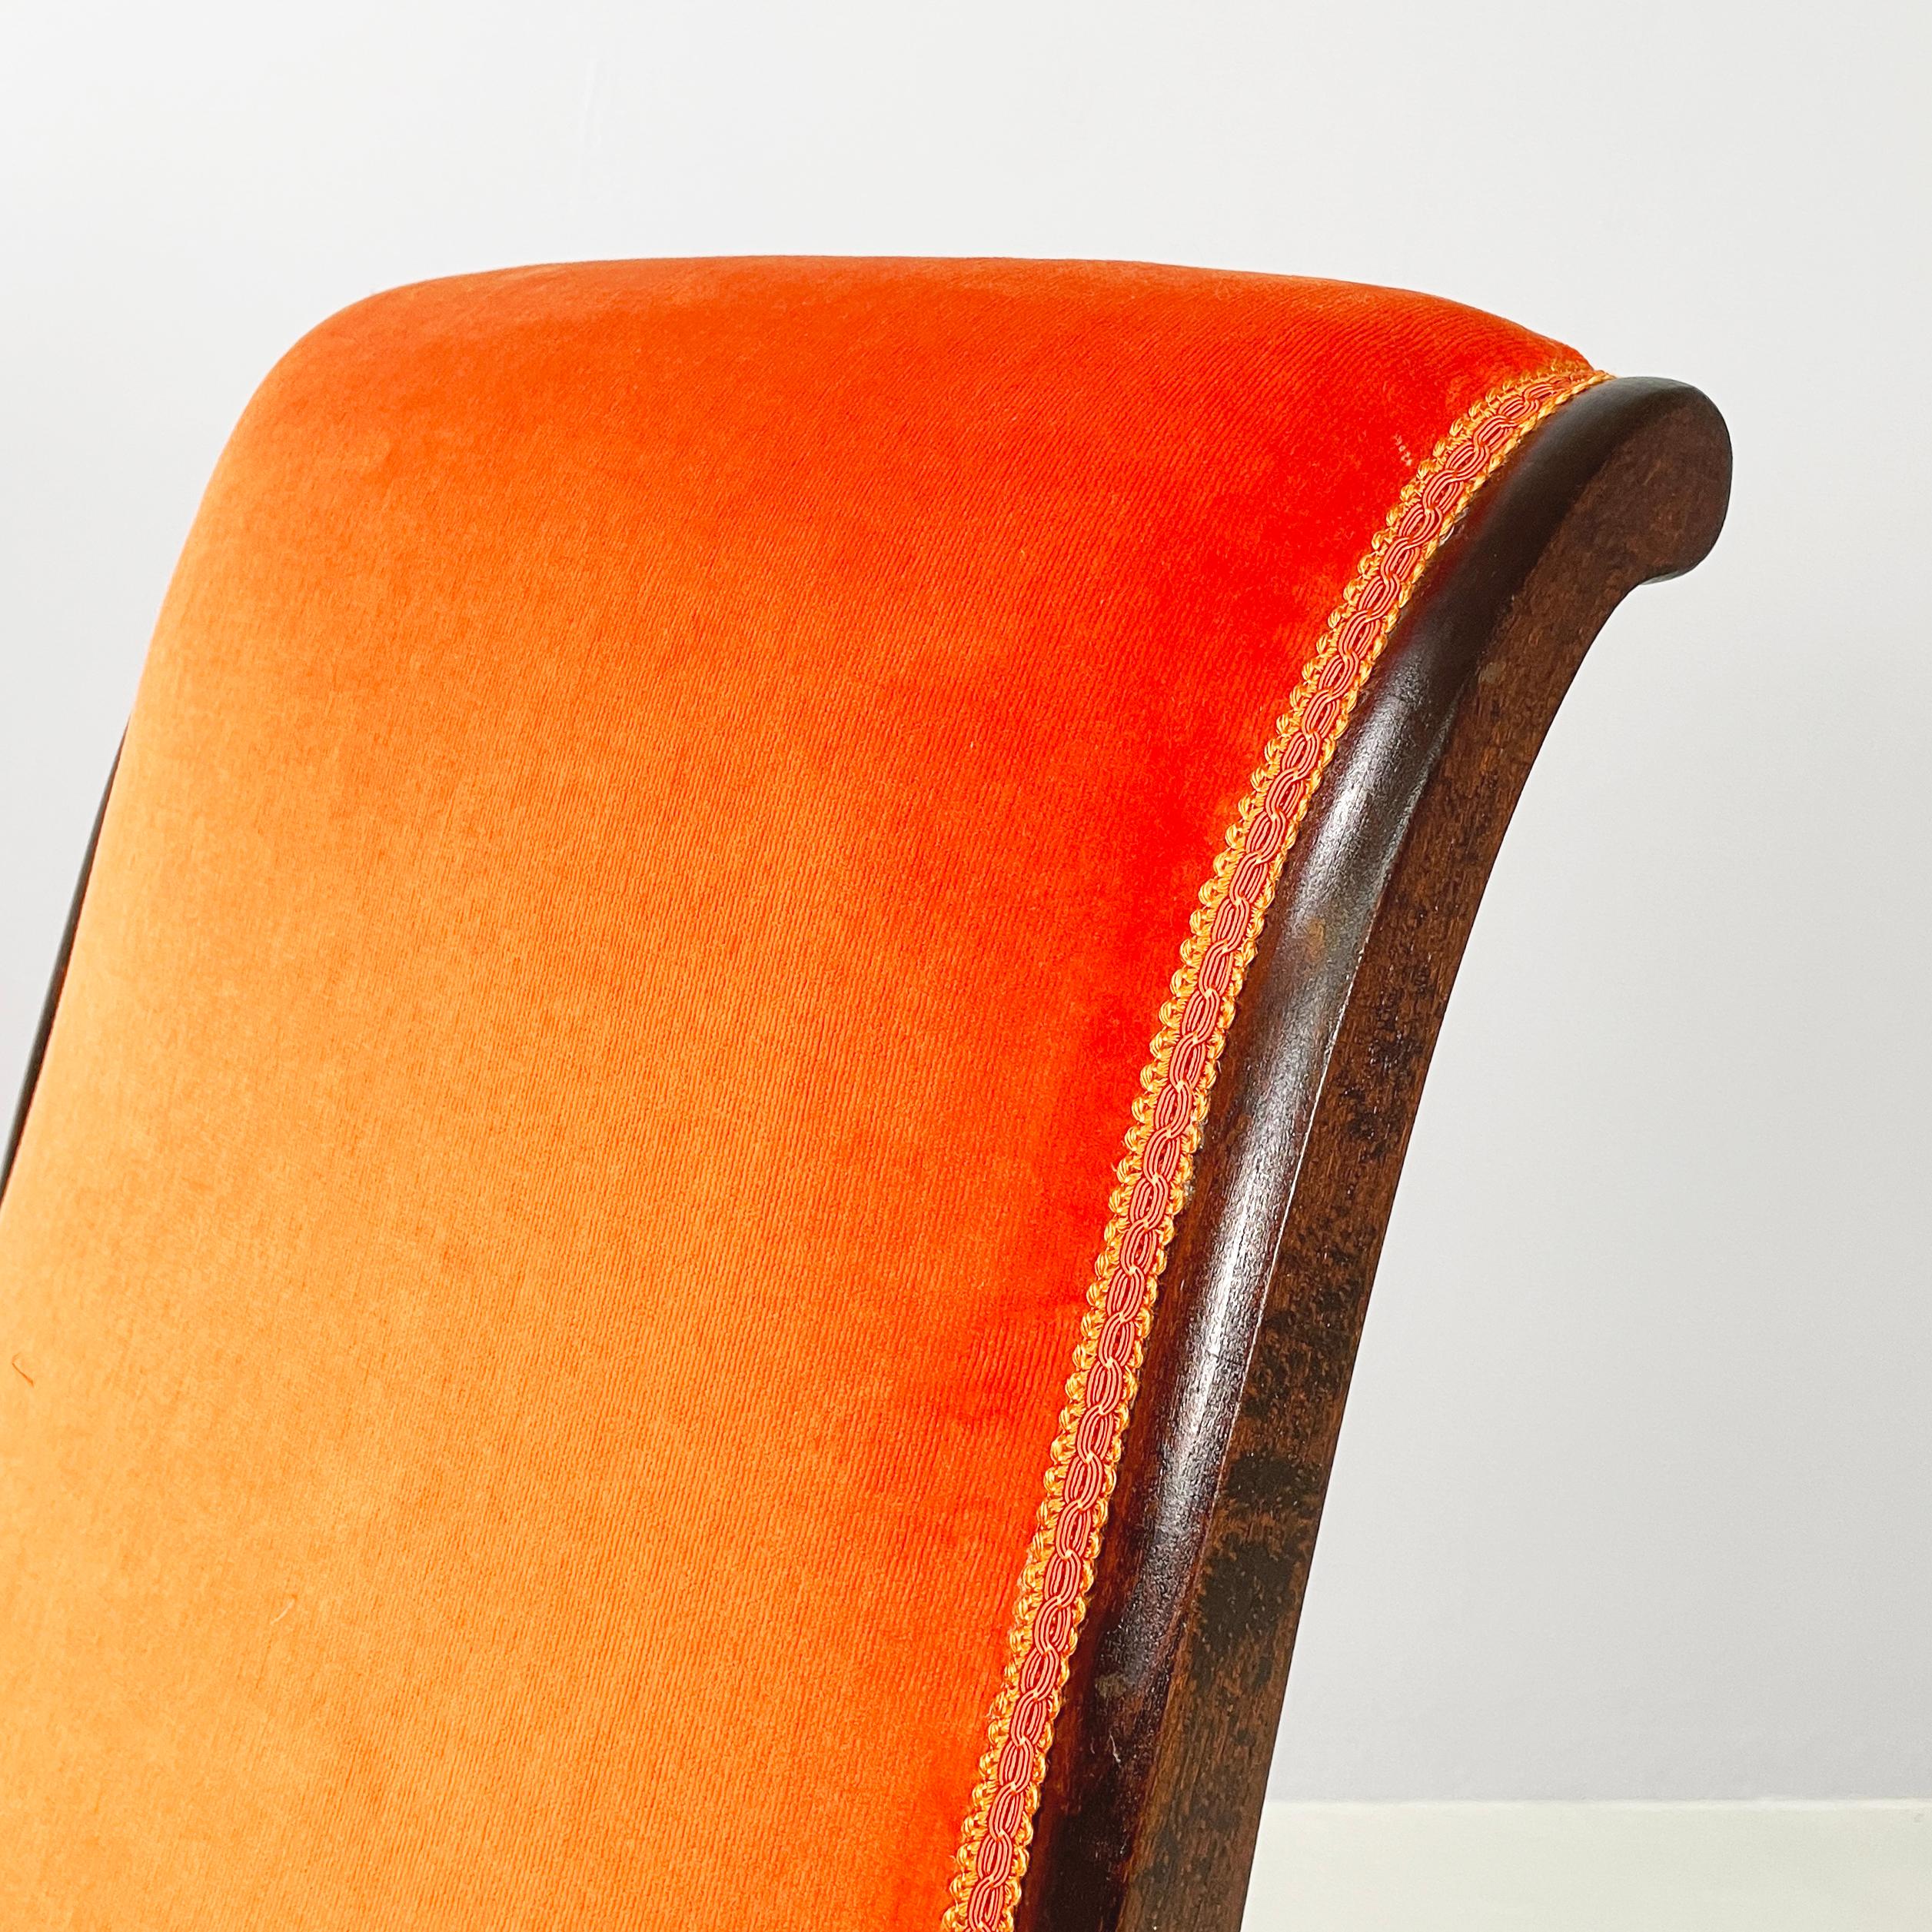 Danish mid-century modern Chair in orange velvet and dark wood, 1950s For Sale 3